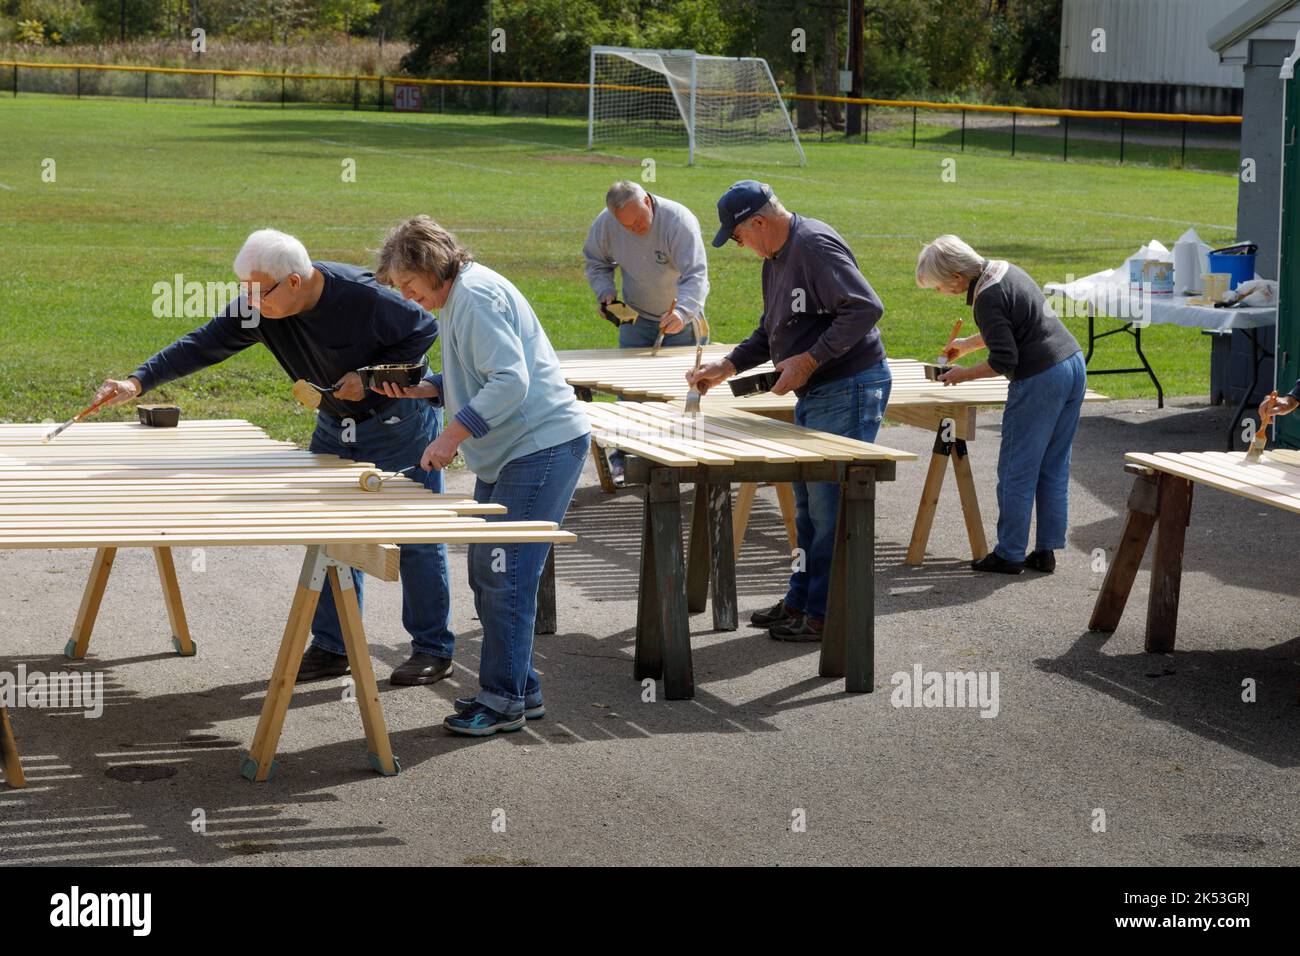 St. Johnsville, Montgomery County, Nueva York: Los voluntarios pintan tablillas de madera durante la reparación de la tribuna en el campo de pelota de la comunidad. Foto de stock